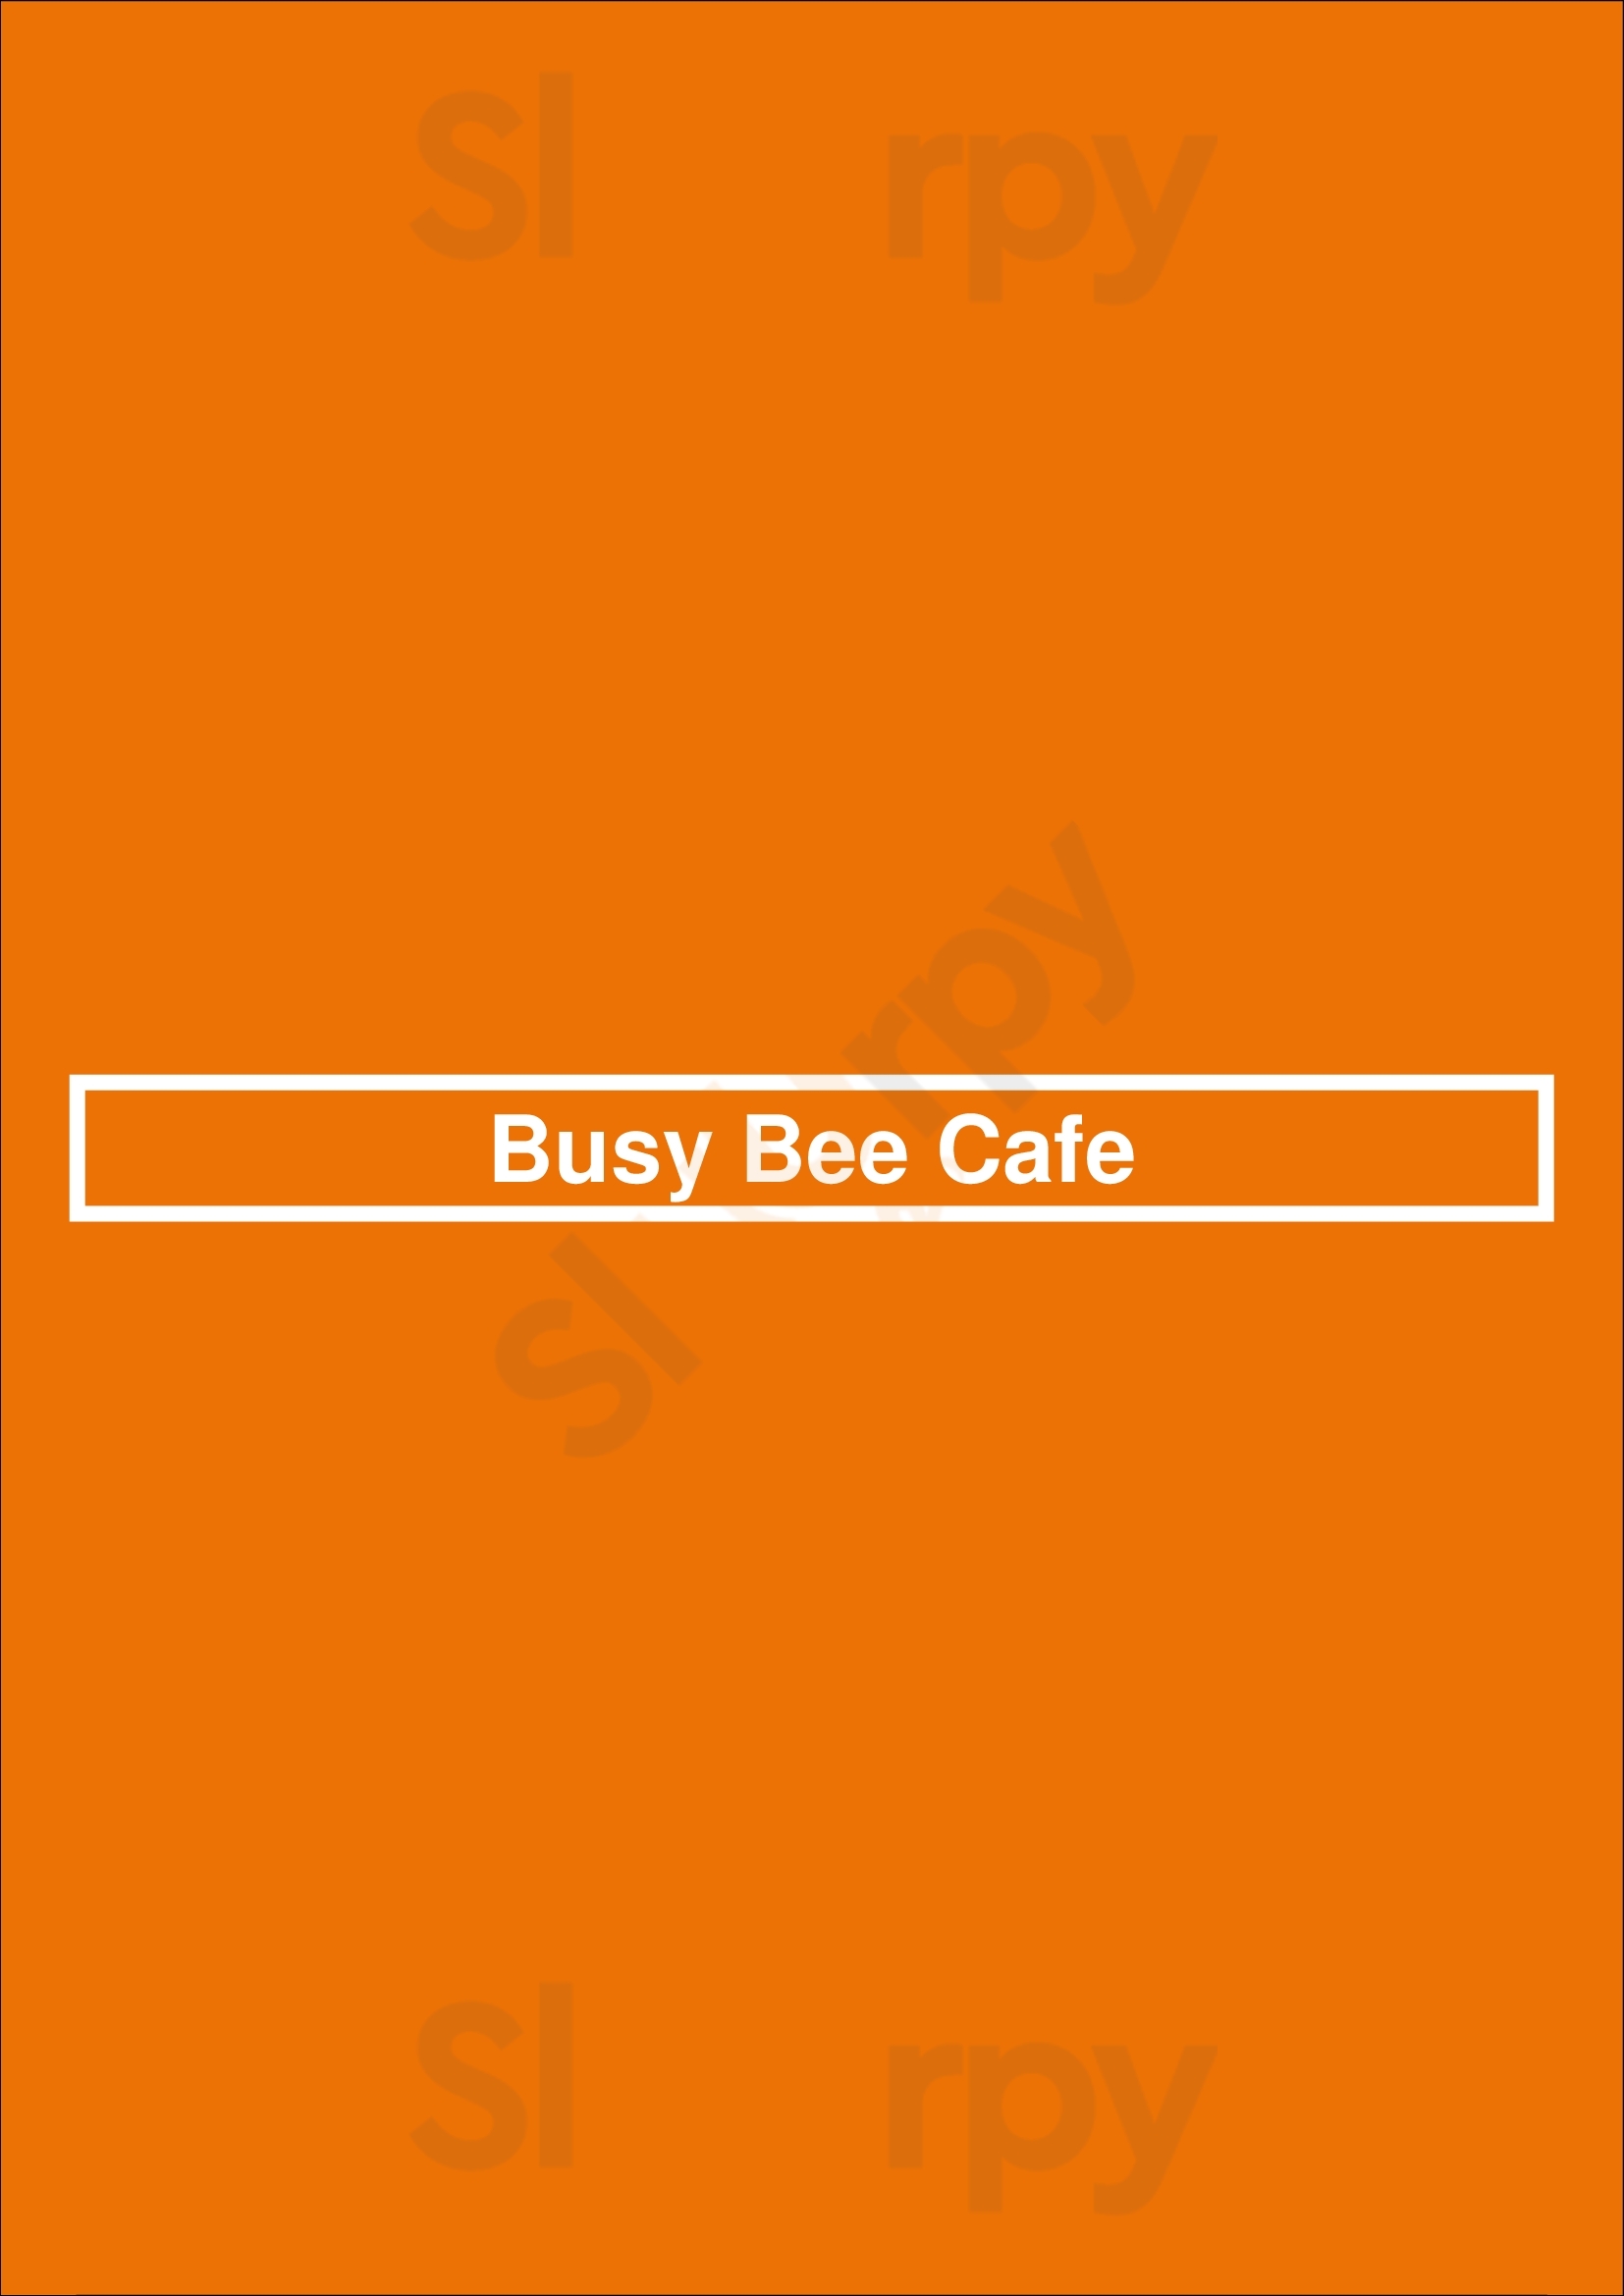 Busy Bee Cafe Atlanta Menu - 1